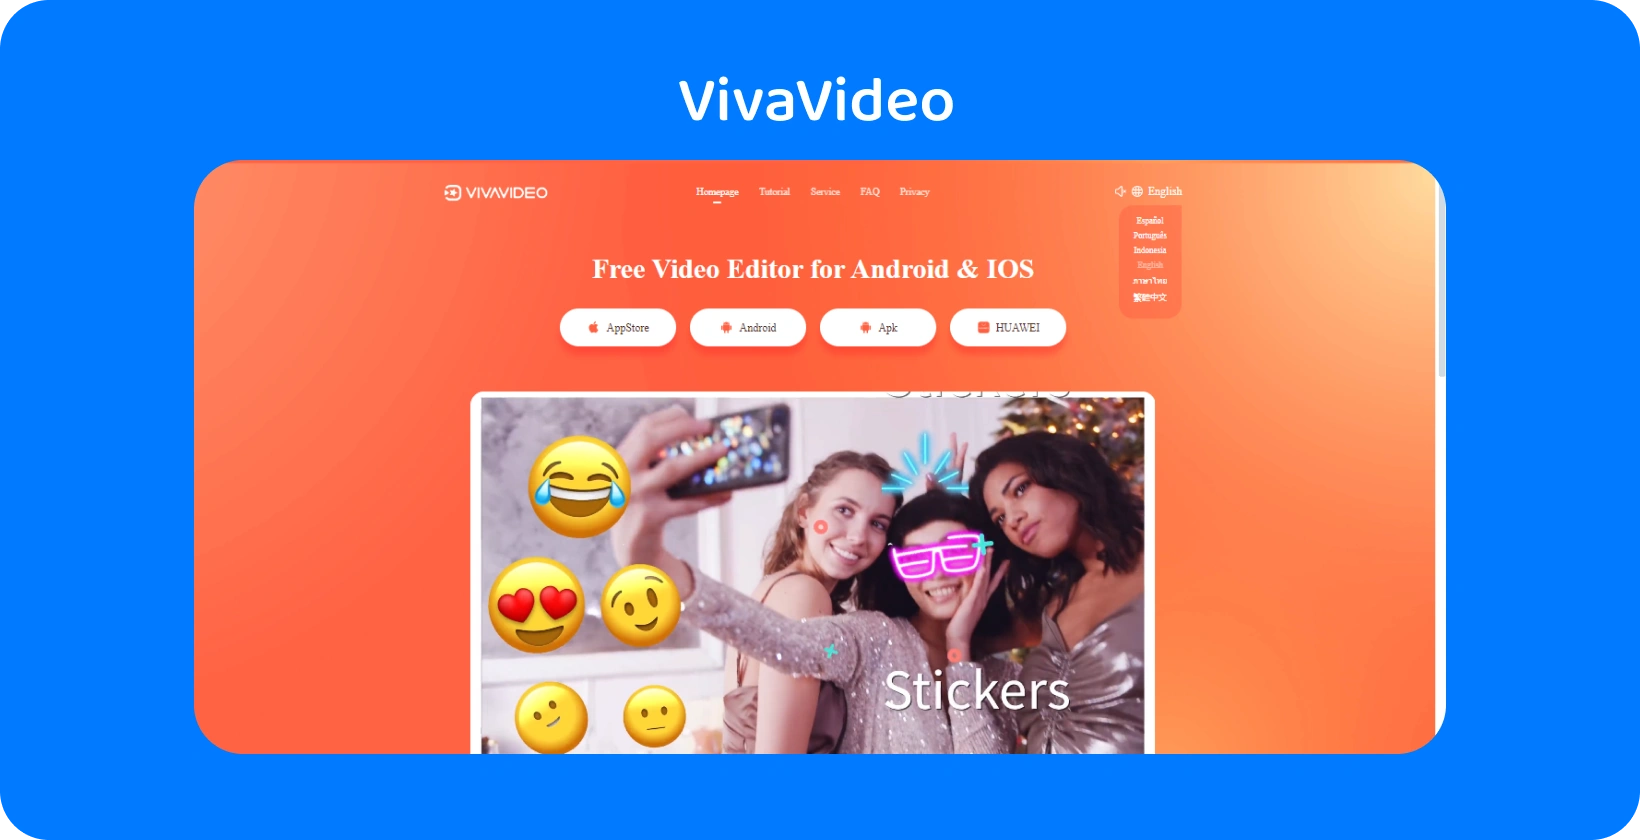 VivaVideo aplikacije sa živopisnom narandžastom pozadinom, prikazujući funkcije nalepnica za poboljšanje video zapisa na Android i iOS.
